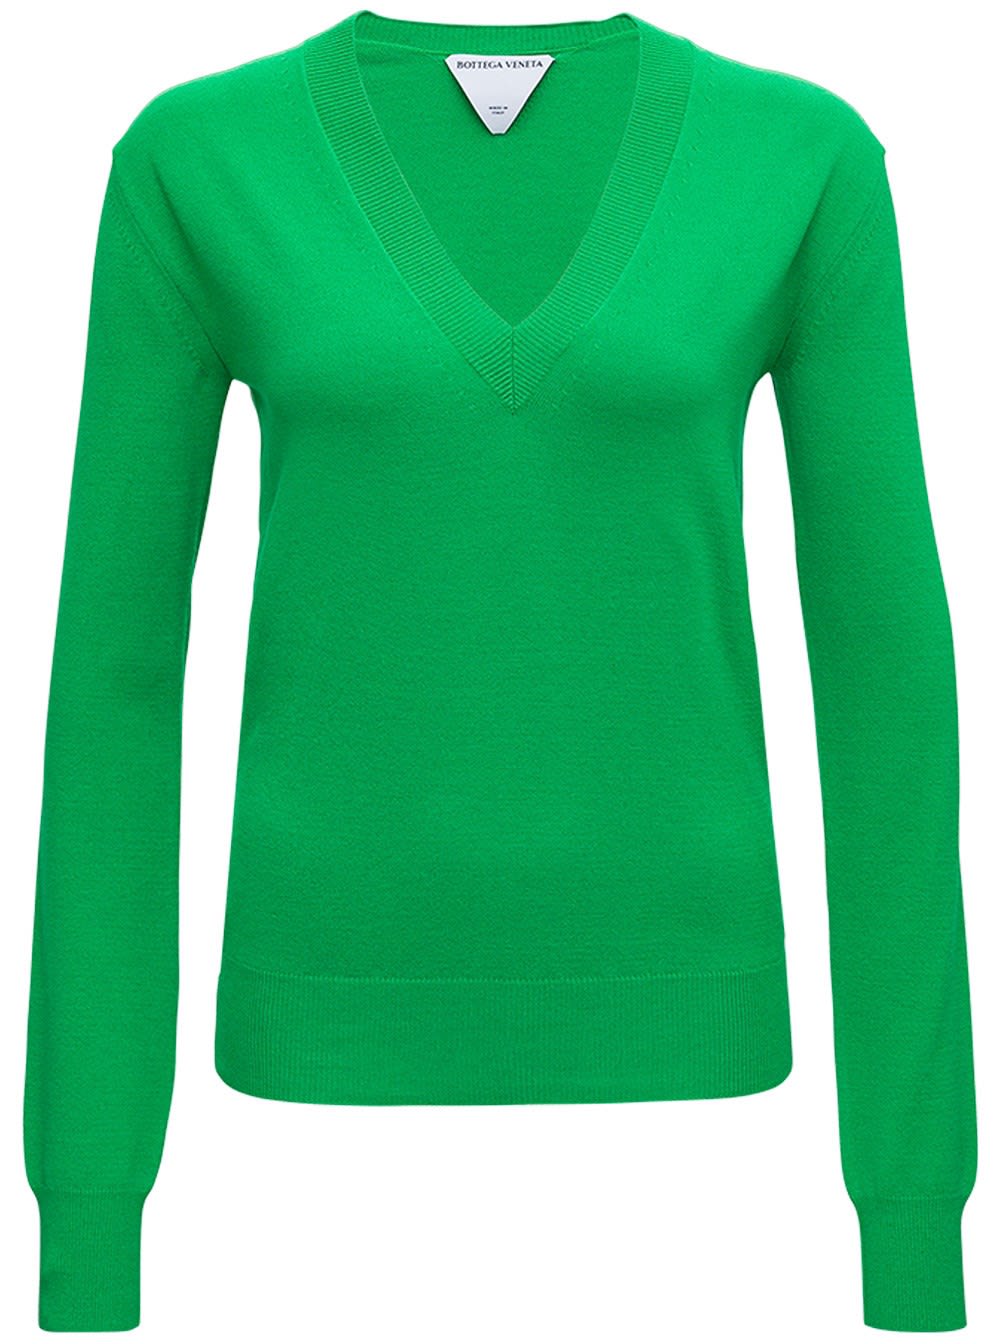 Bottega Veneta Green Long Sleeved Shirt In Wool Blend